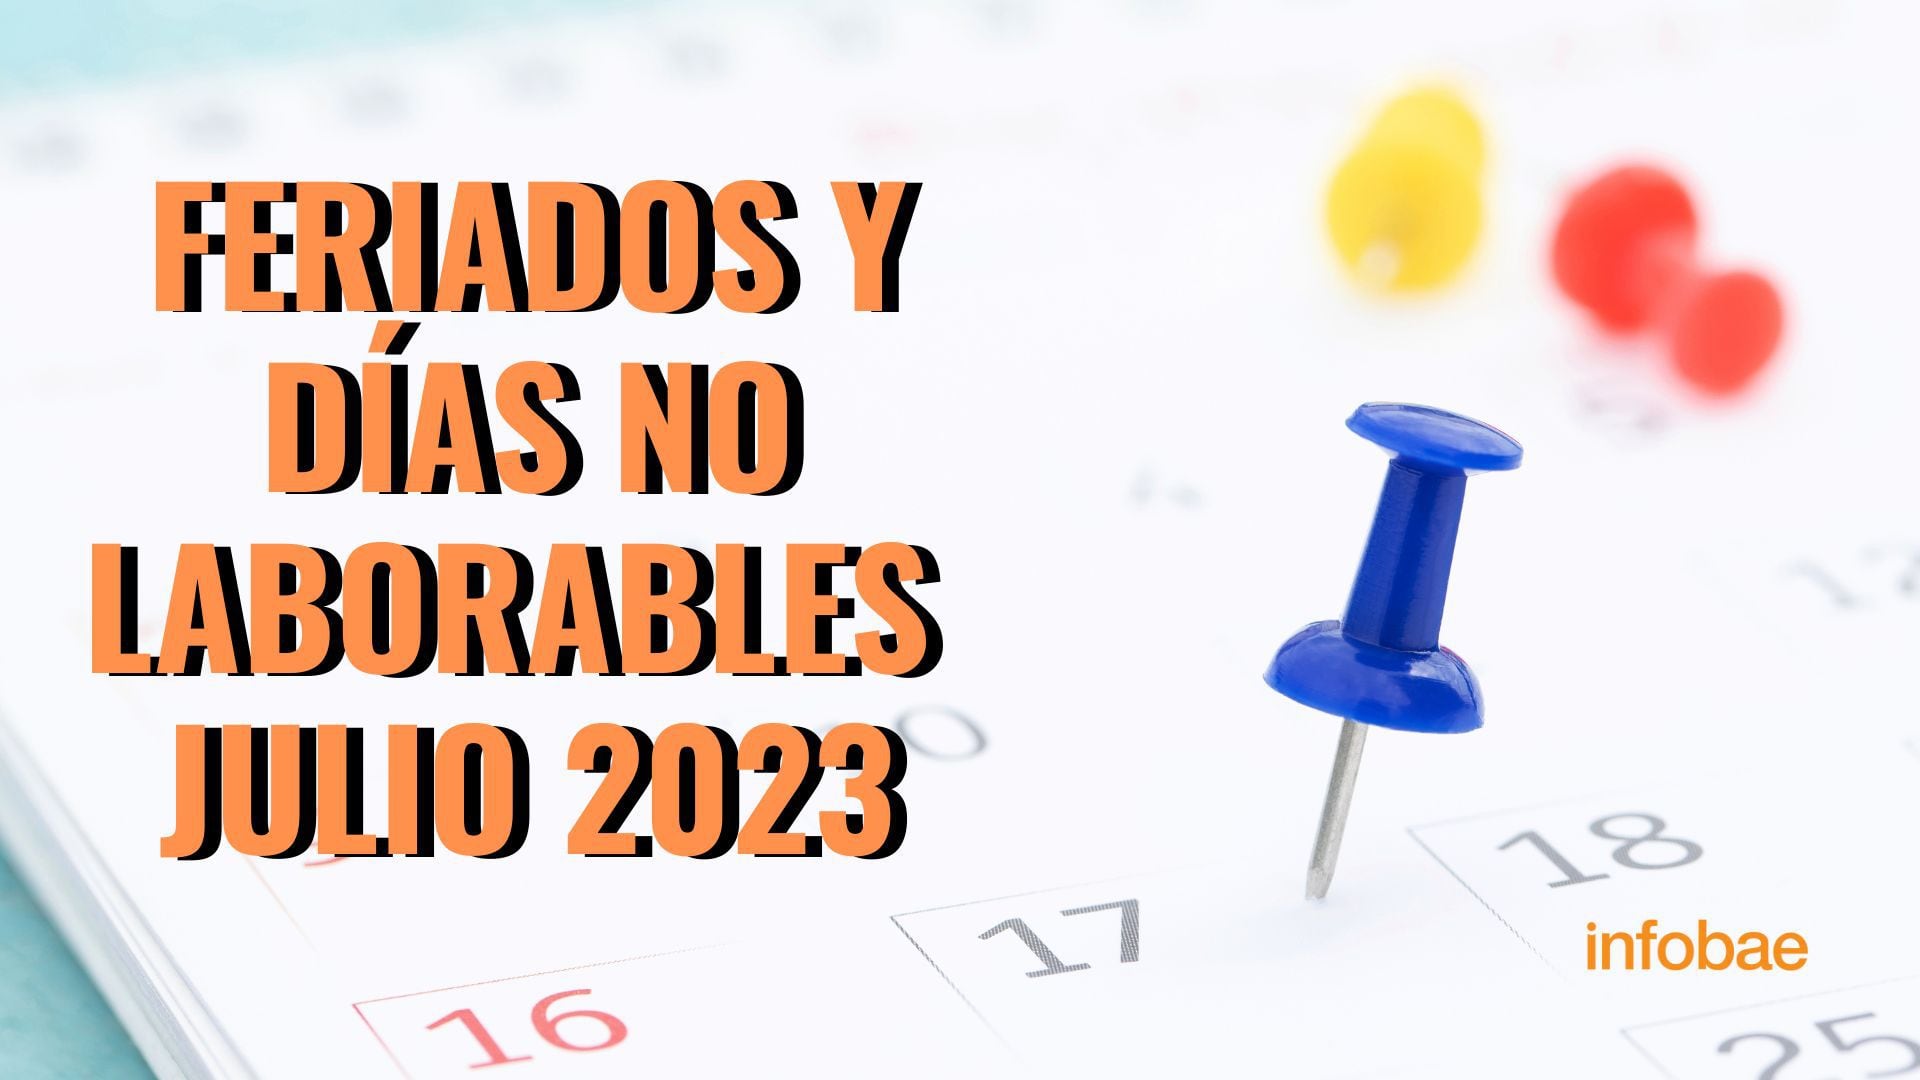 Feriados Em Madrid 2023 Feriados y días no laborables confirmados de julio 2023 - Infobae